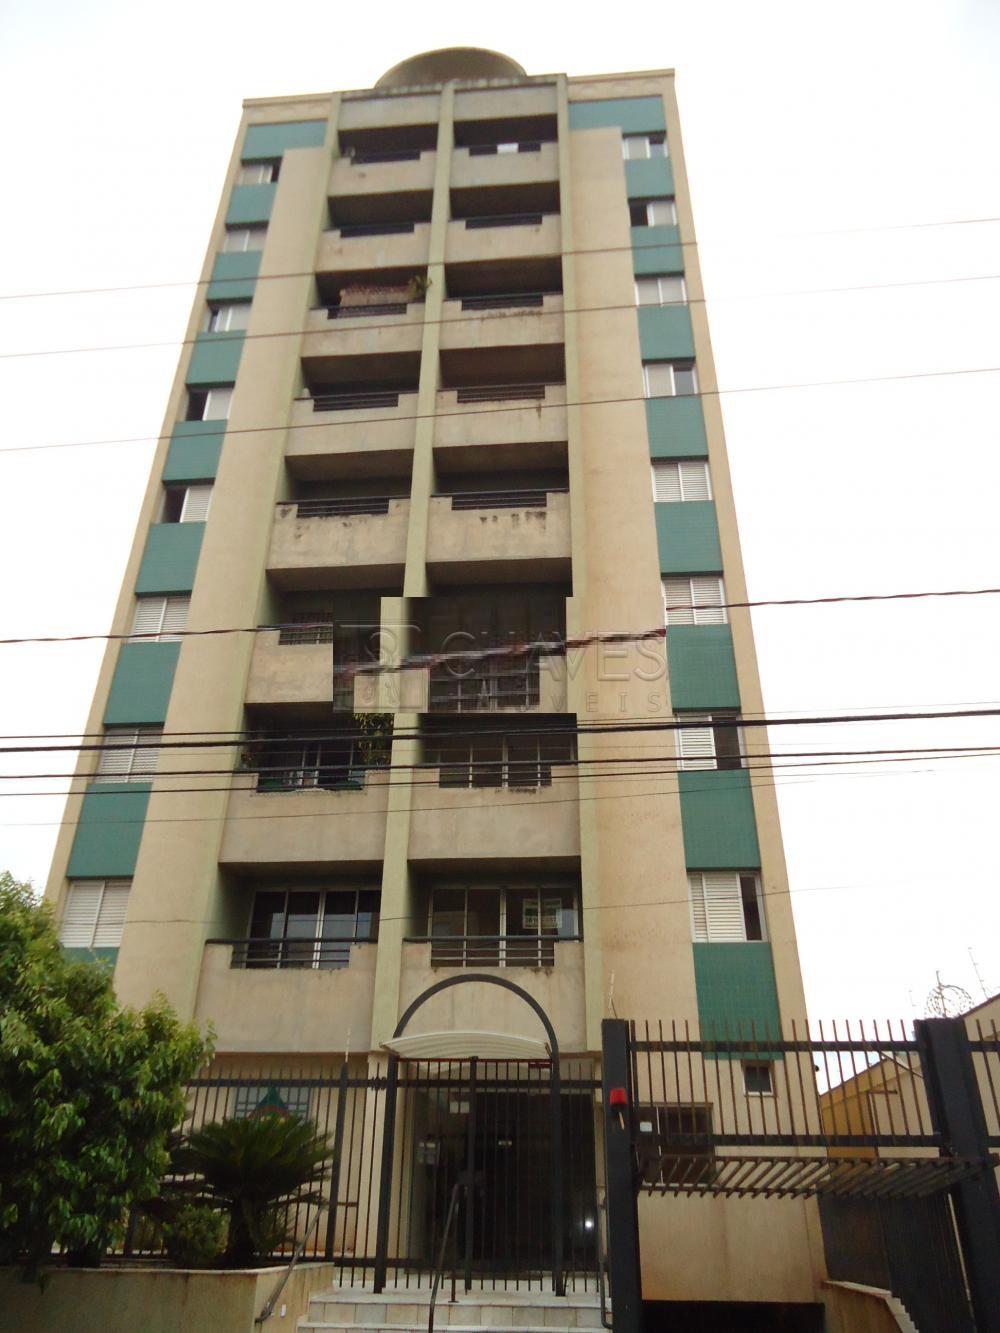 Alugar Apartamento / Padrão em Ribeirão Preto R$ 800,00 - Foto 1